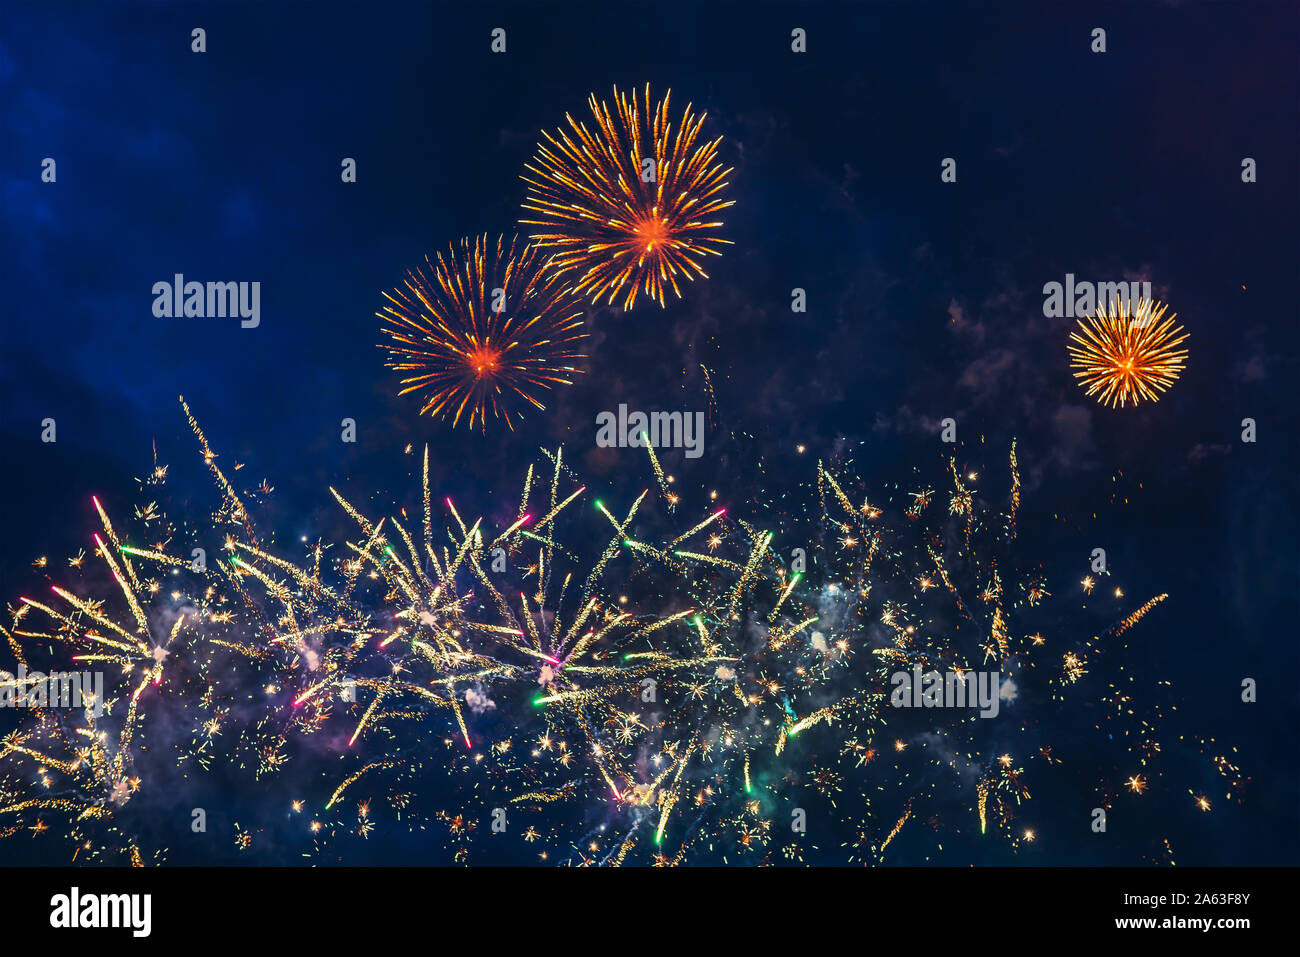 Preiswertes Feuerwerk über dem blauen Himmel, Rot, Gelb, Grün, Blau und Weiß mit Farbe Funken. Hell und glänzend. Feier Konzept. Stockfoto